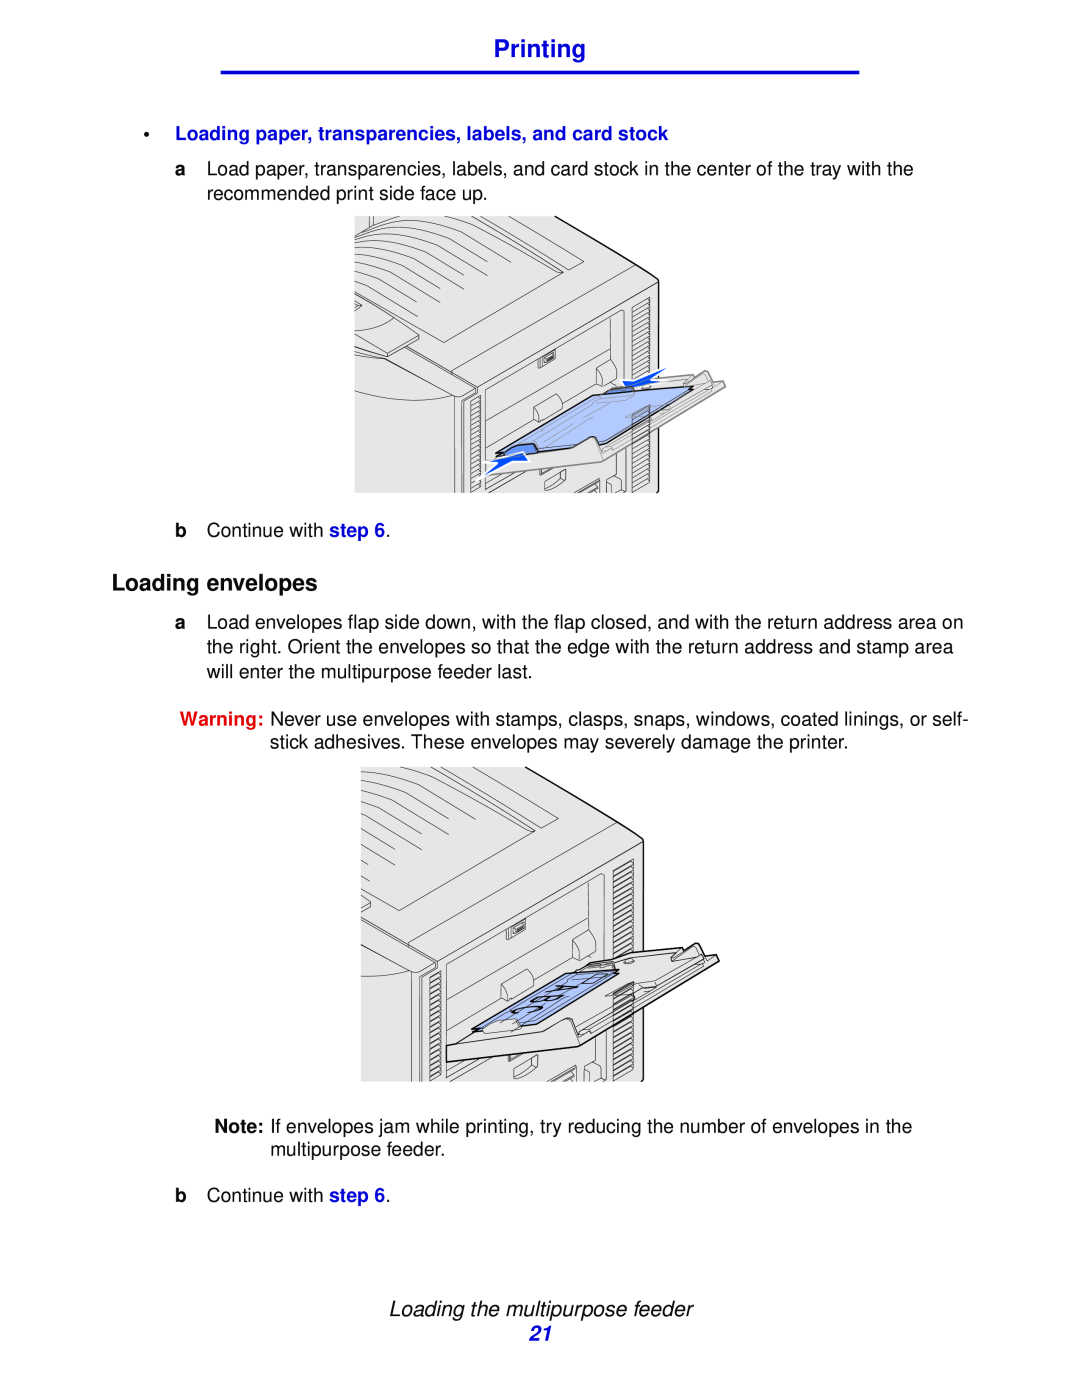 Lexmark 912 manual Loading envelopes, Printing, Loading the multipurpose feeder 